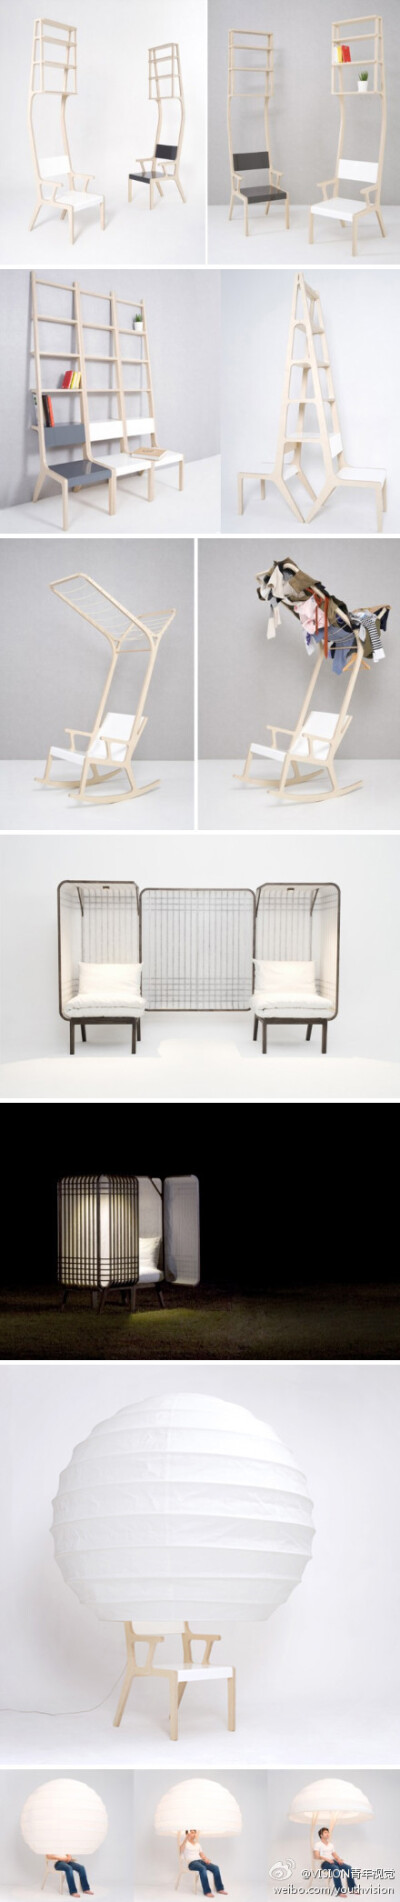 [视觉设计]多功能家具，来自韩国设计师Seung-Yong Song的作品。组合了生活中所需的细节。